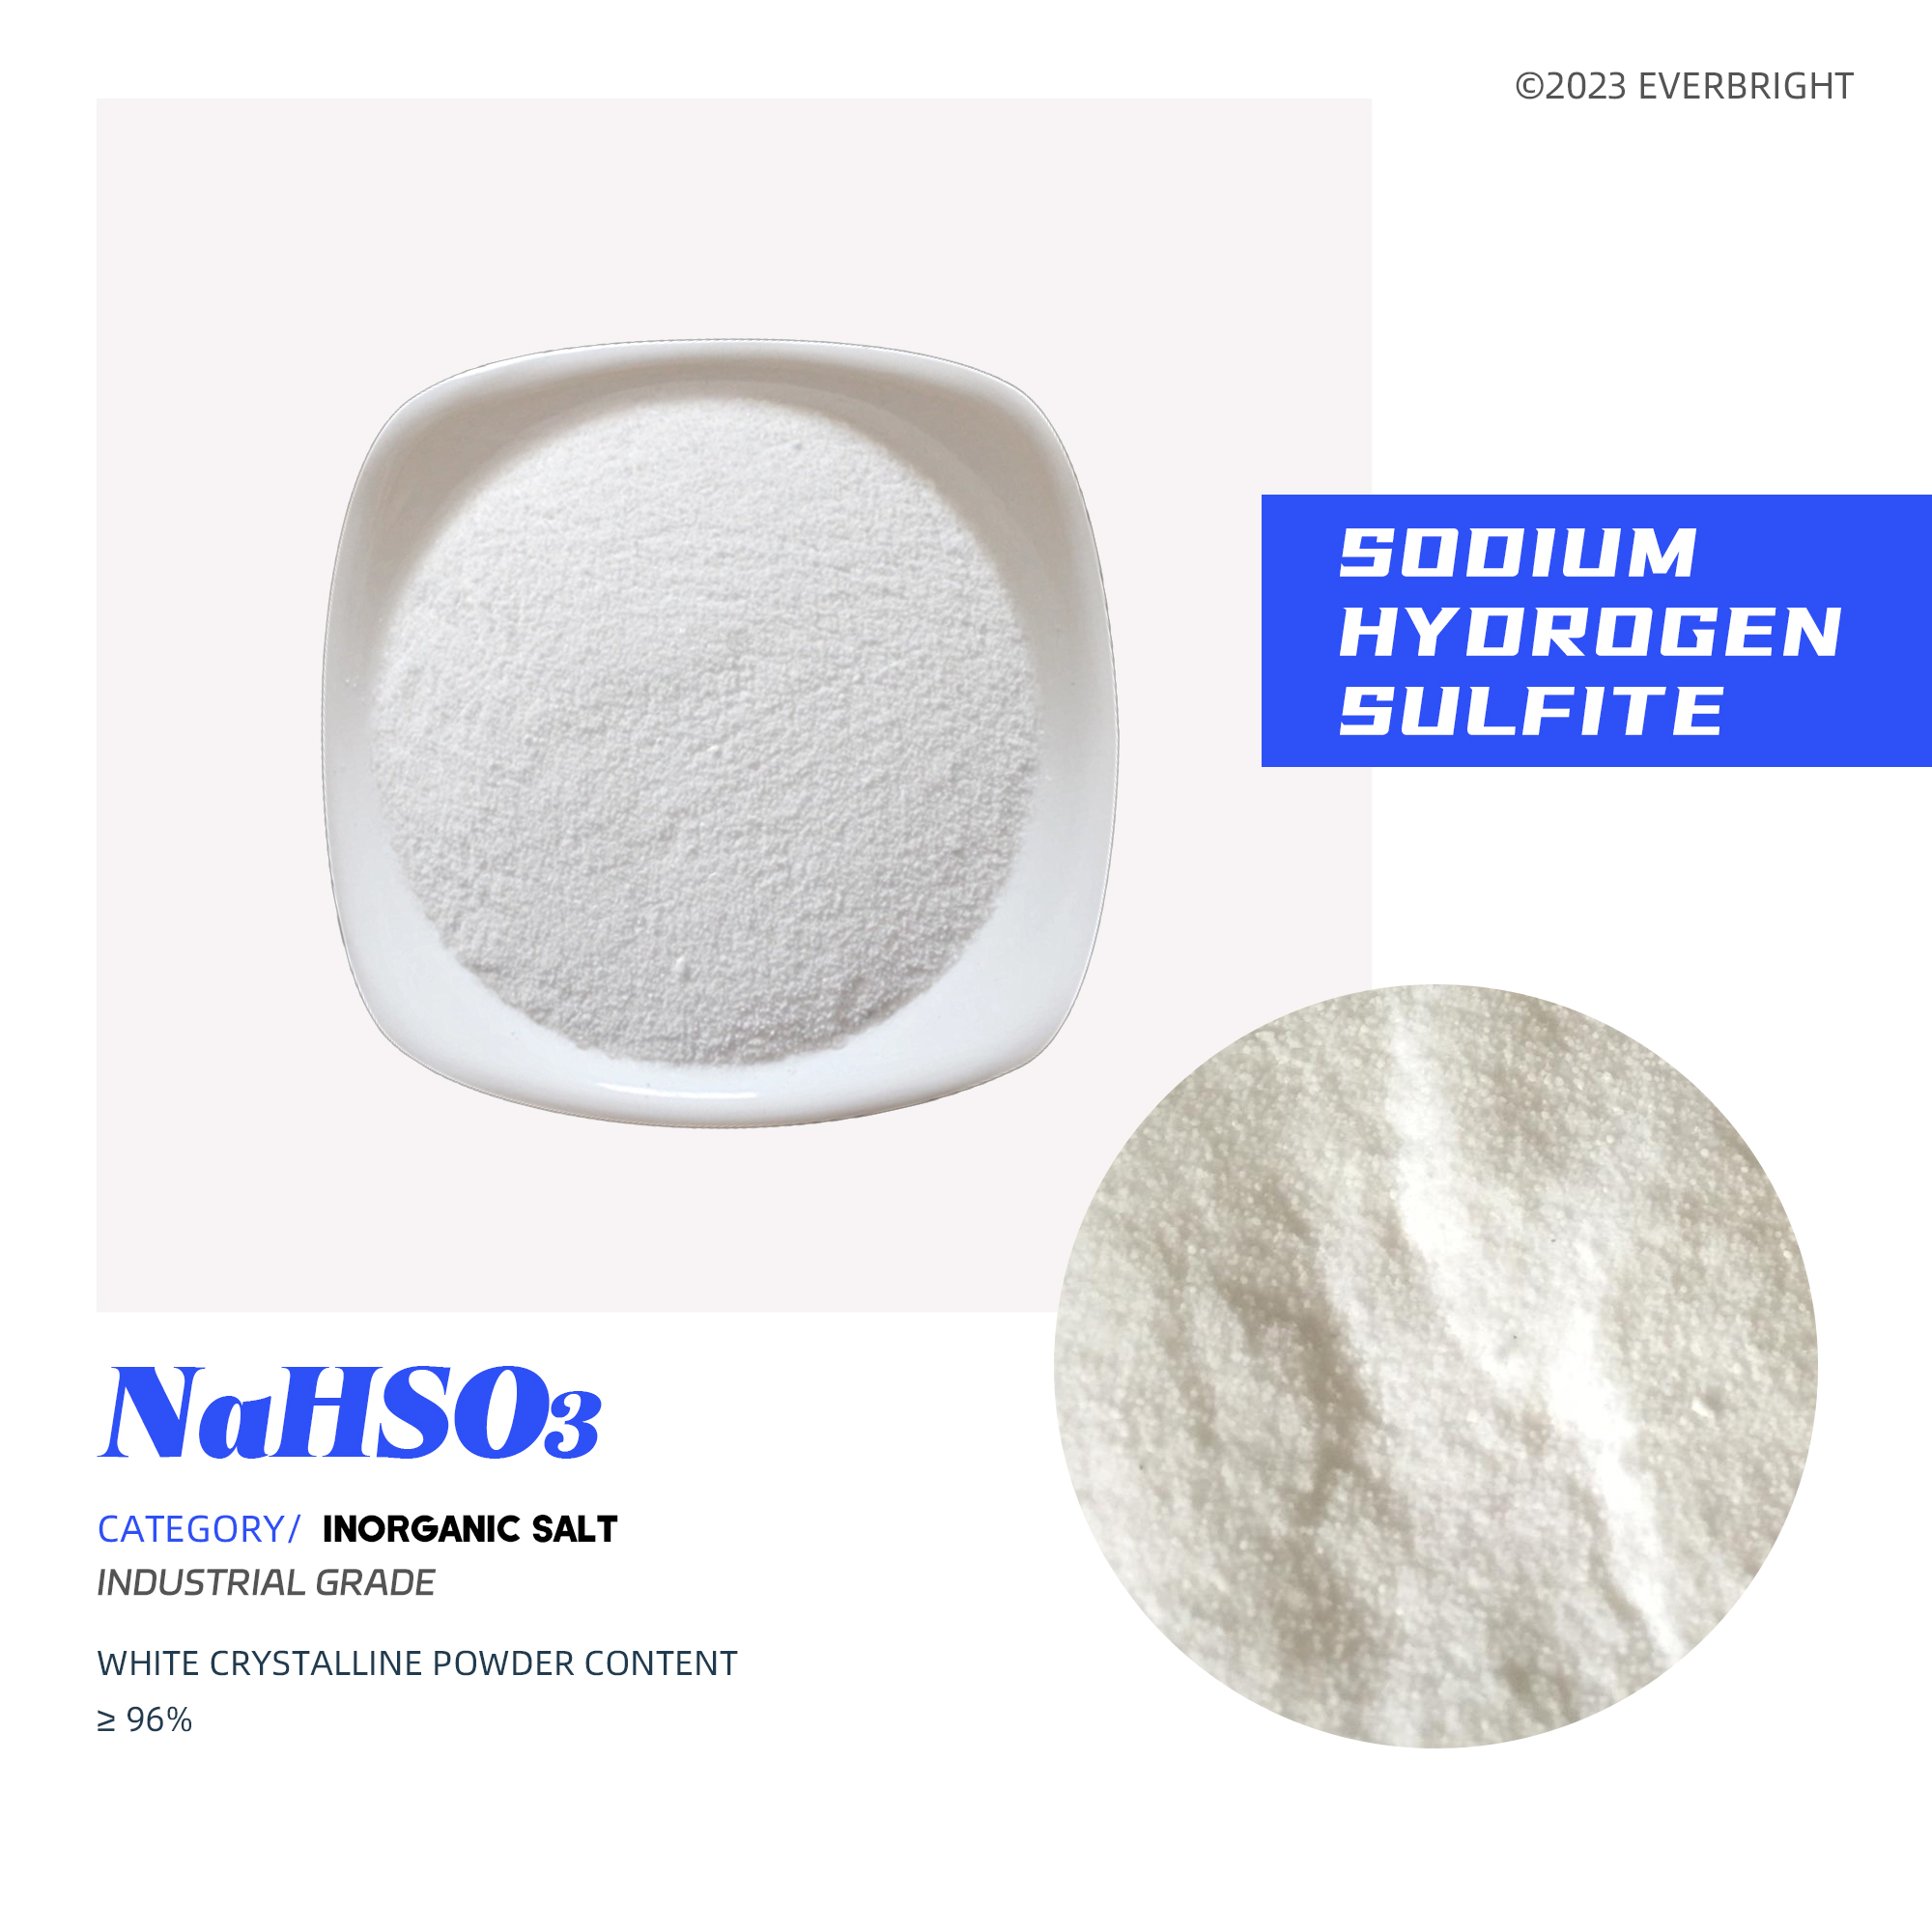 Sodium Hydrogen Sulfite